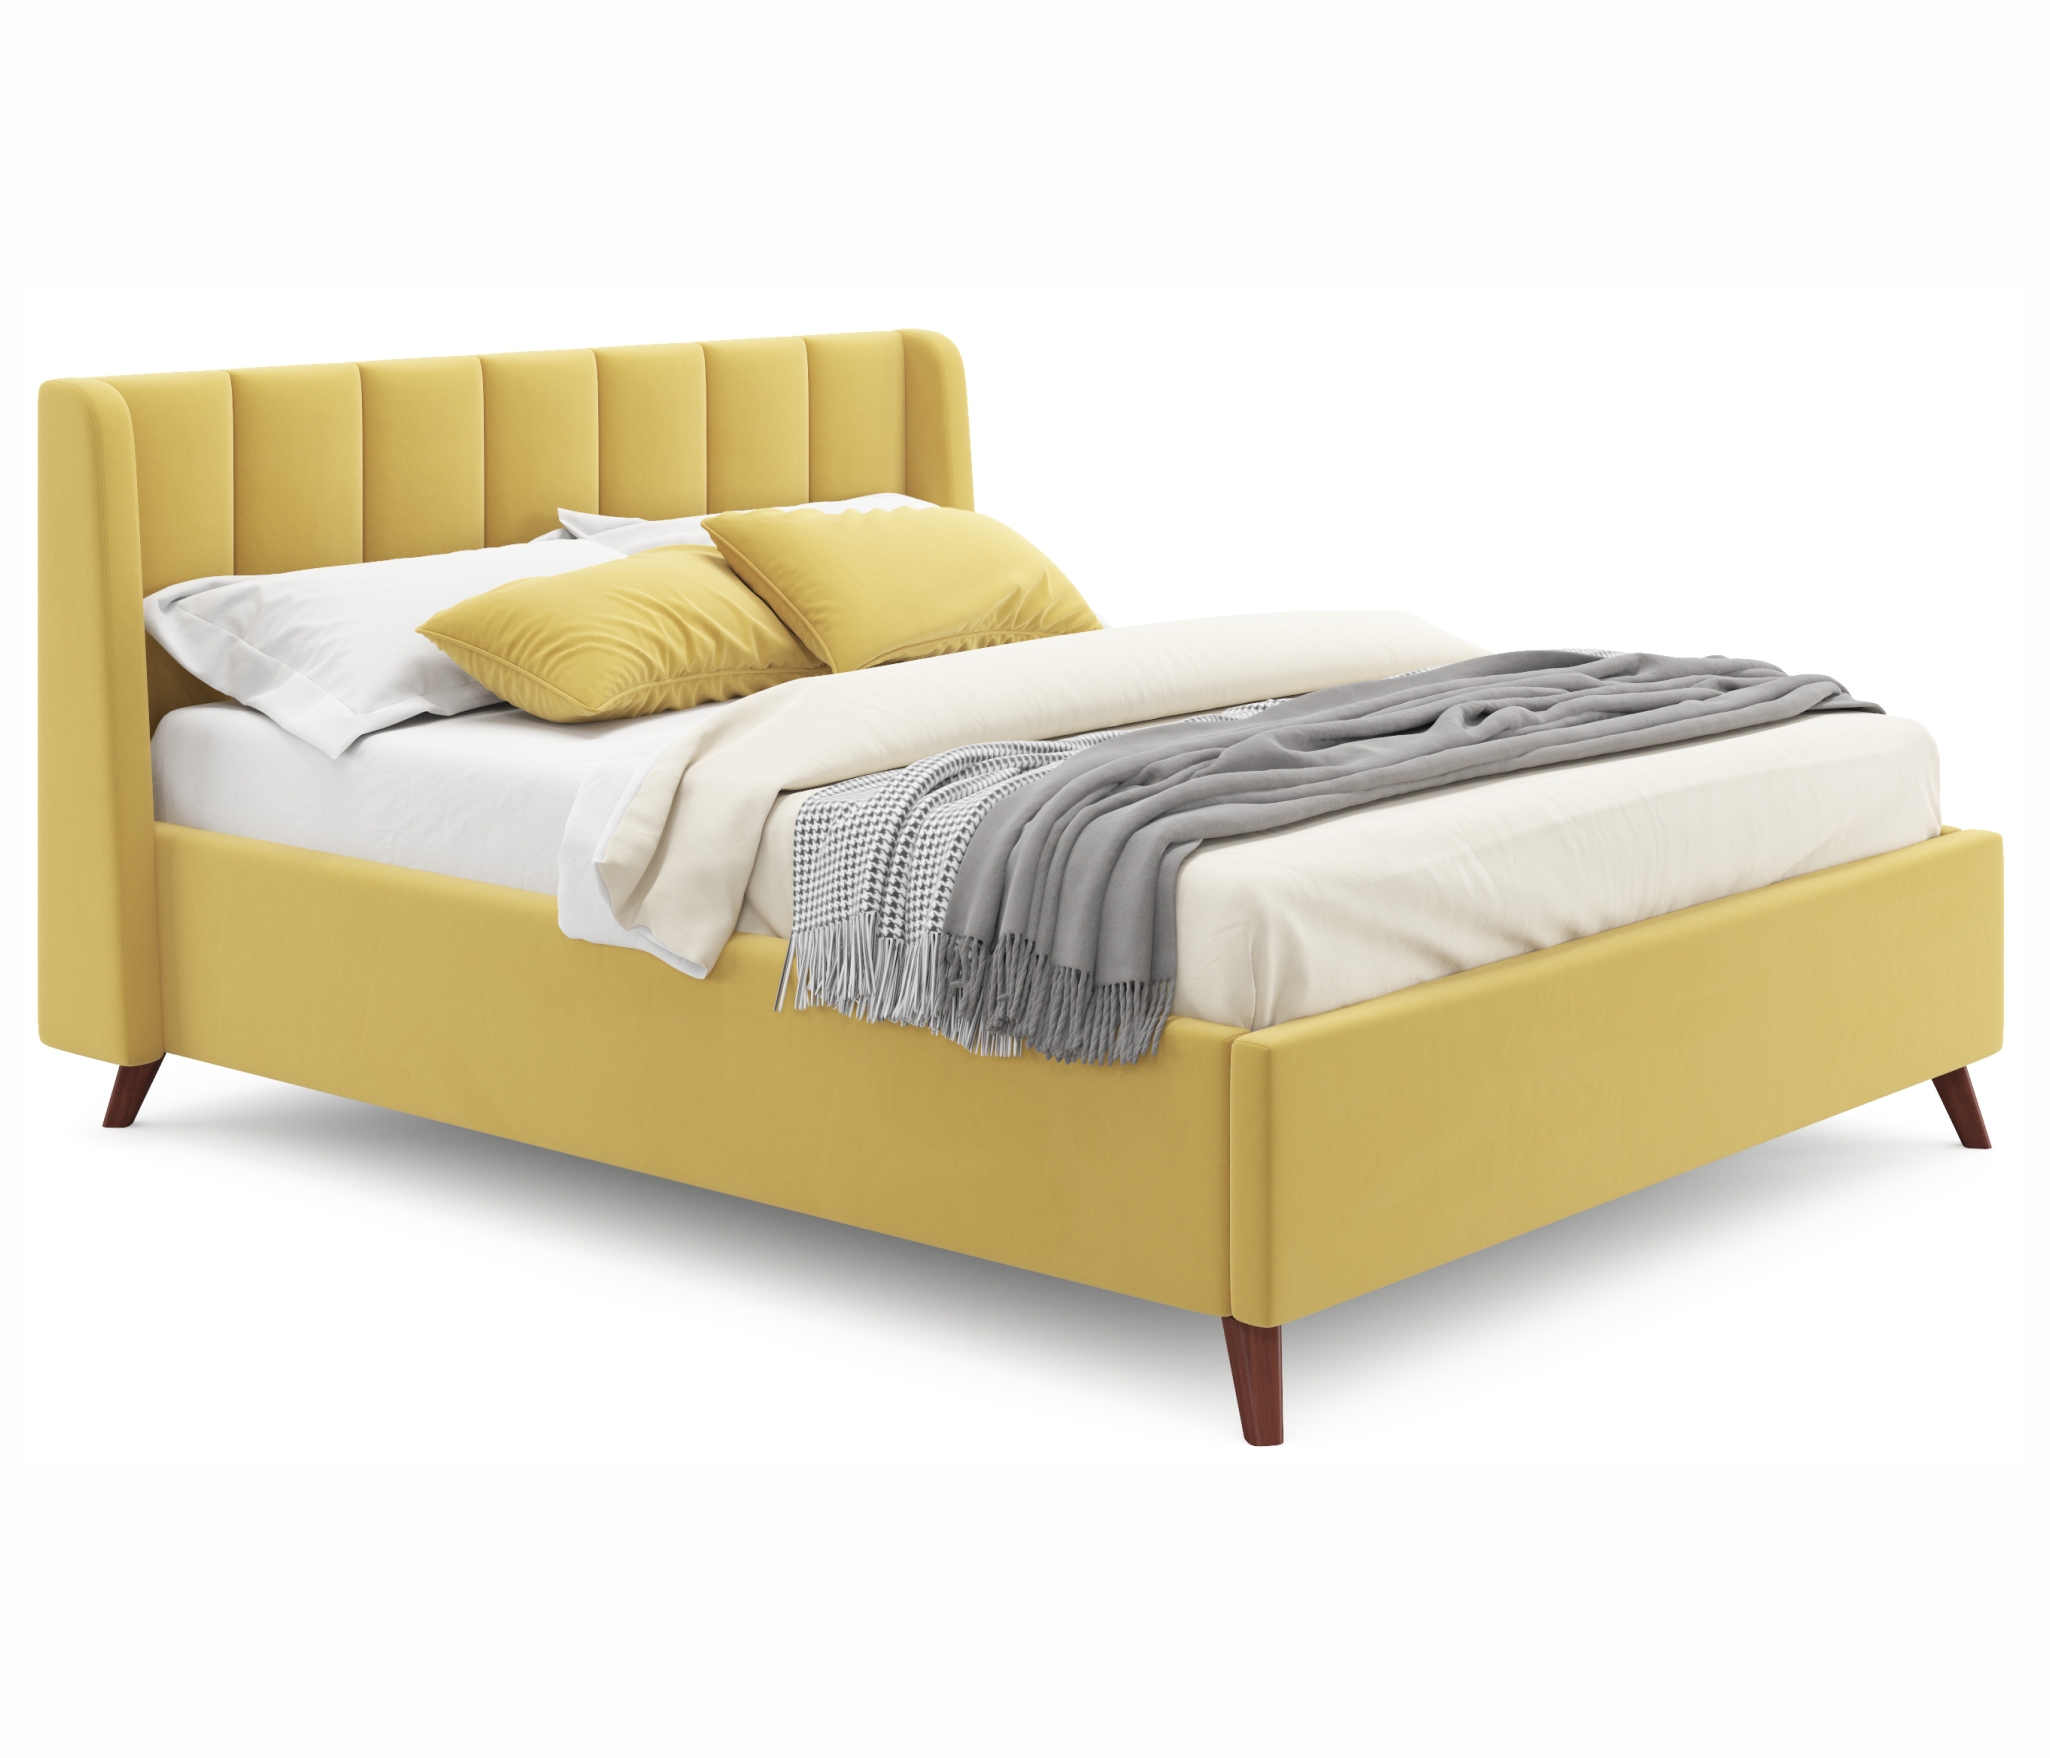 Купить мягкая кровать betsi 1600 желтая с подъемным механизмом и матрасом promo b cocos. | ZEPPELIN MOBILI